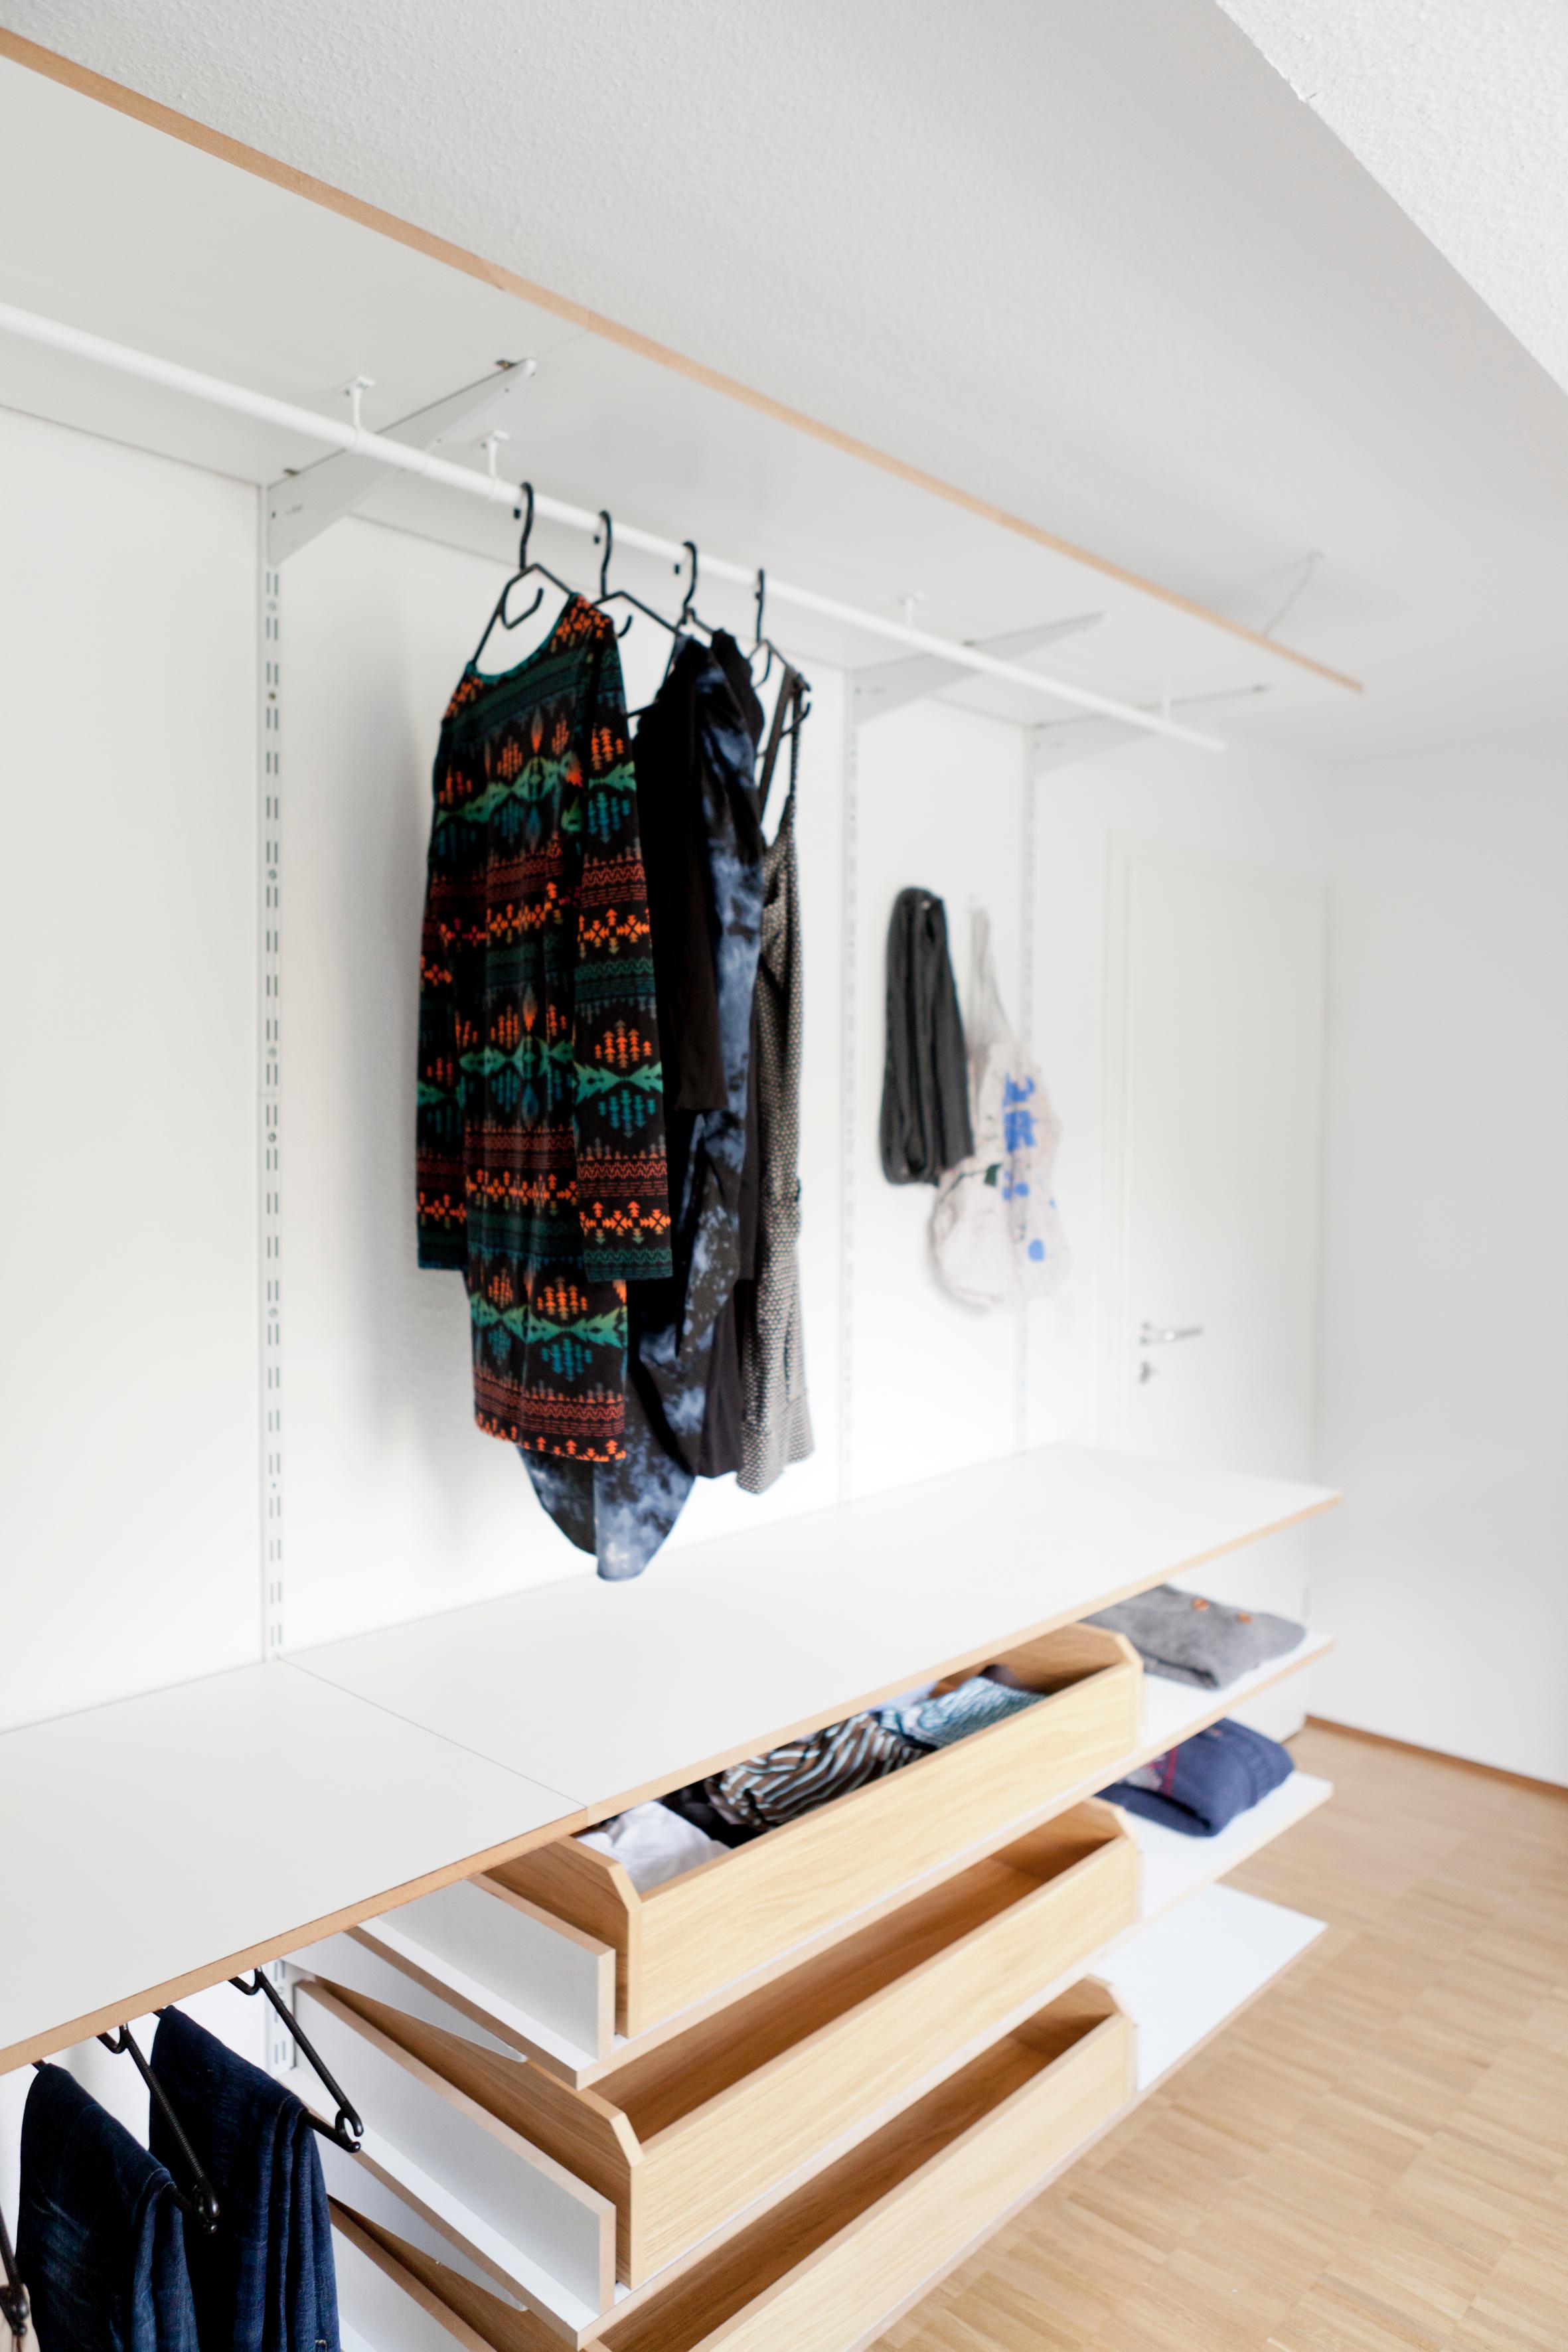 Hängefläche #kleiderstange #garderobe #kleiderschrank #ankleidezimmer ©STUDIO OINK